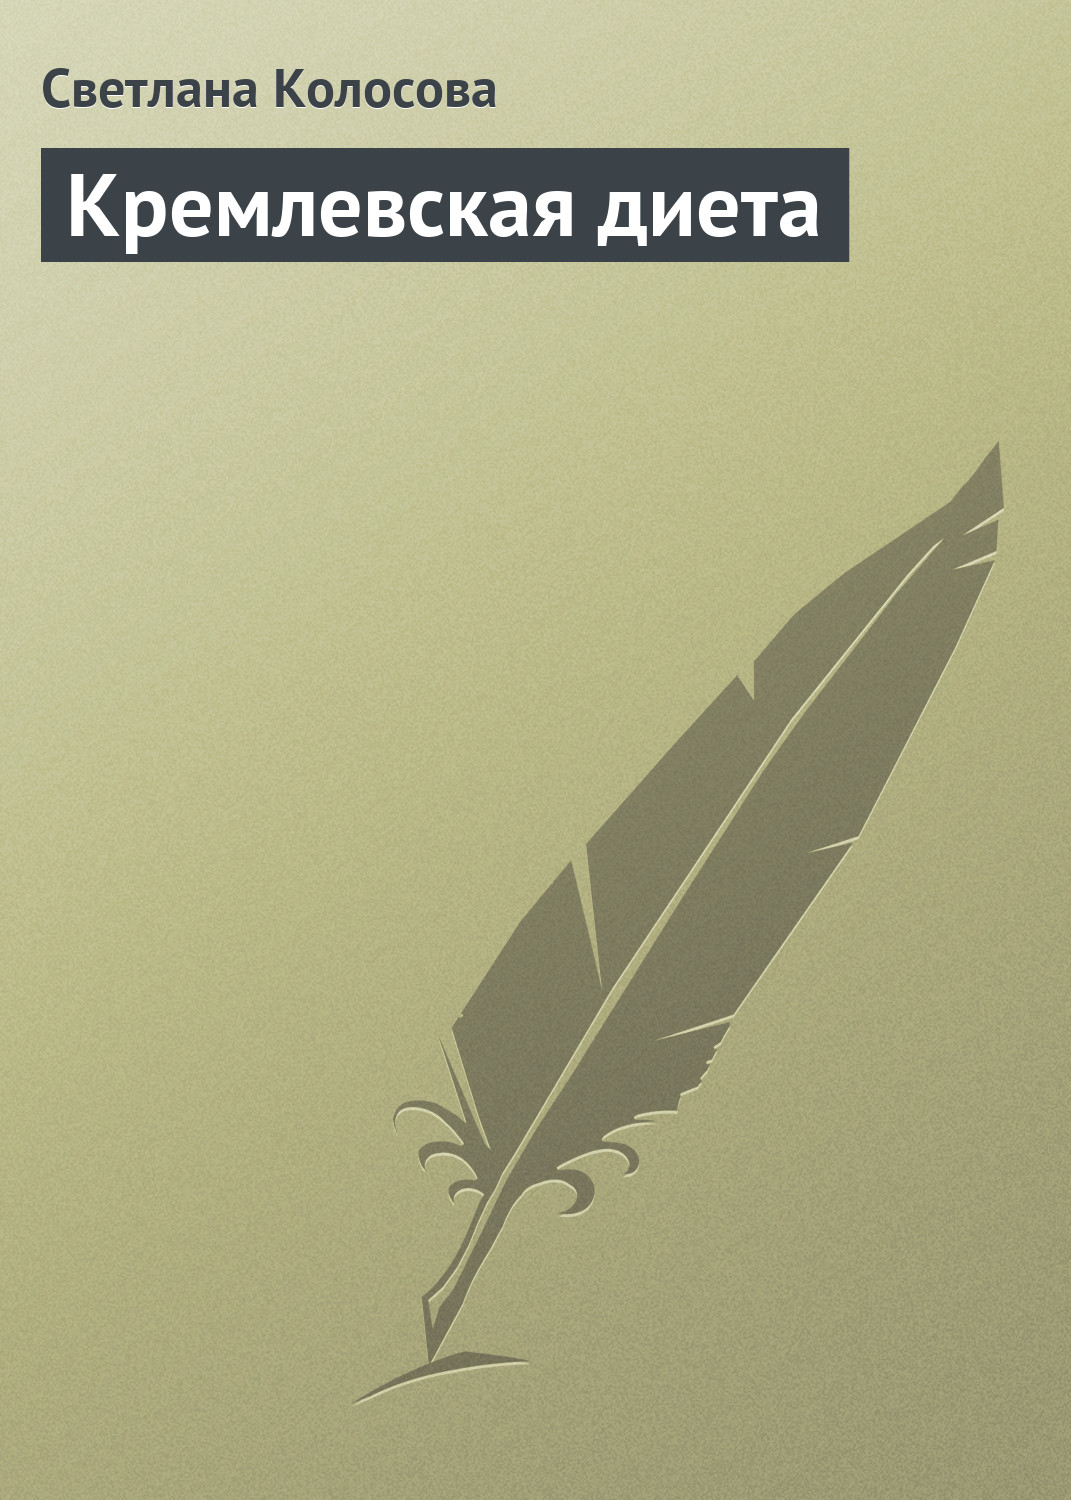 Книга Кремлевская диета из серии , созданная Светлана Колосова, может относится к жанру Здоровье, Кулинария. Стоимость электронной книги Кремлевская диета с идентификатором 176906 составляет 67.98 руб.